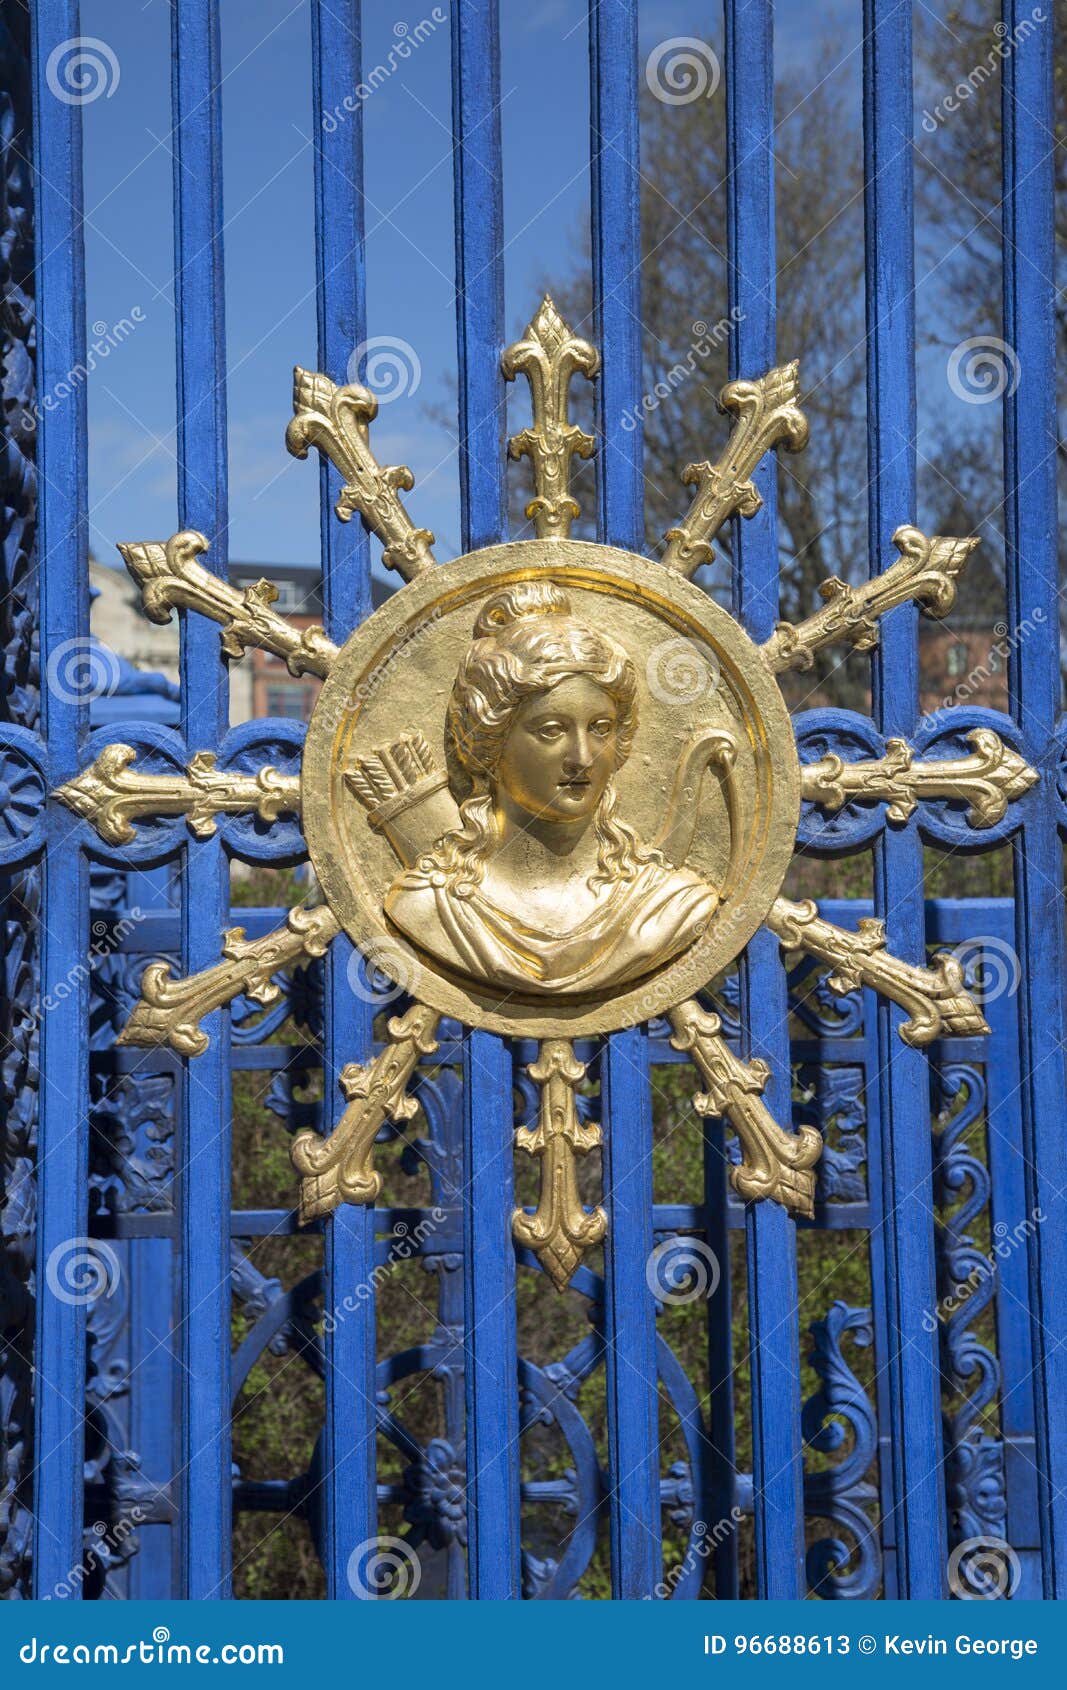 gold bust on djurgarden island park gate, stockholm